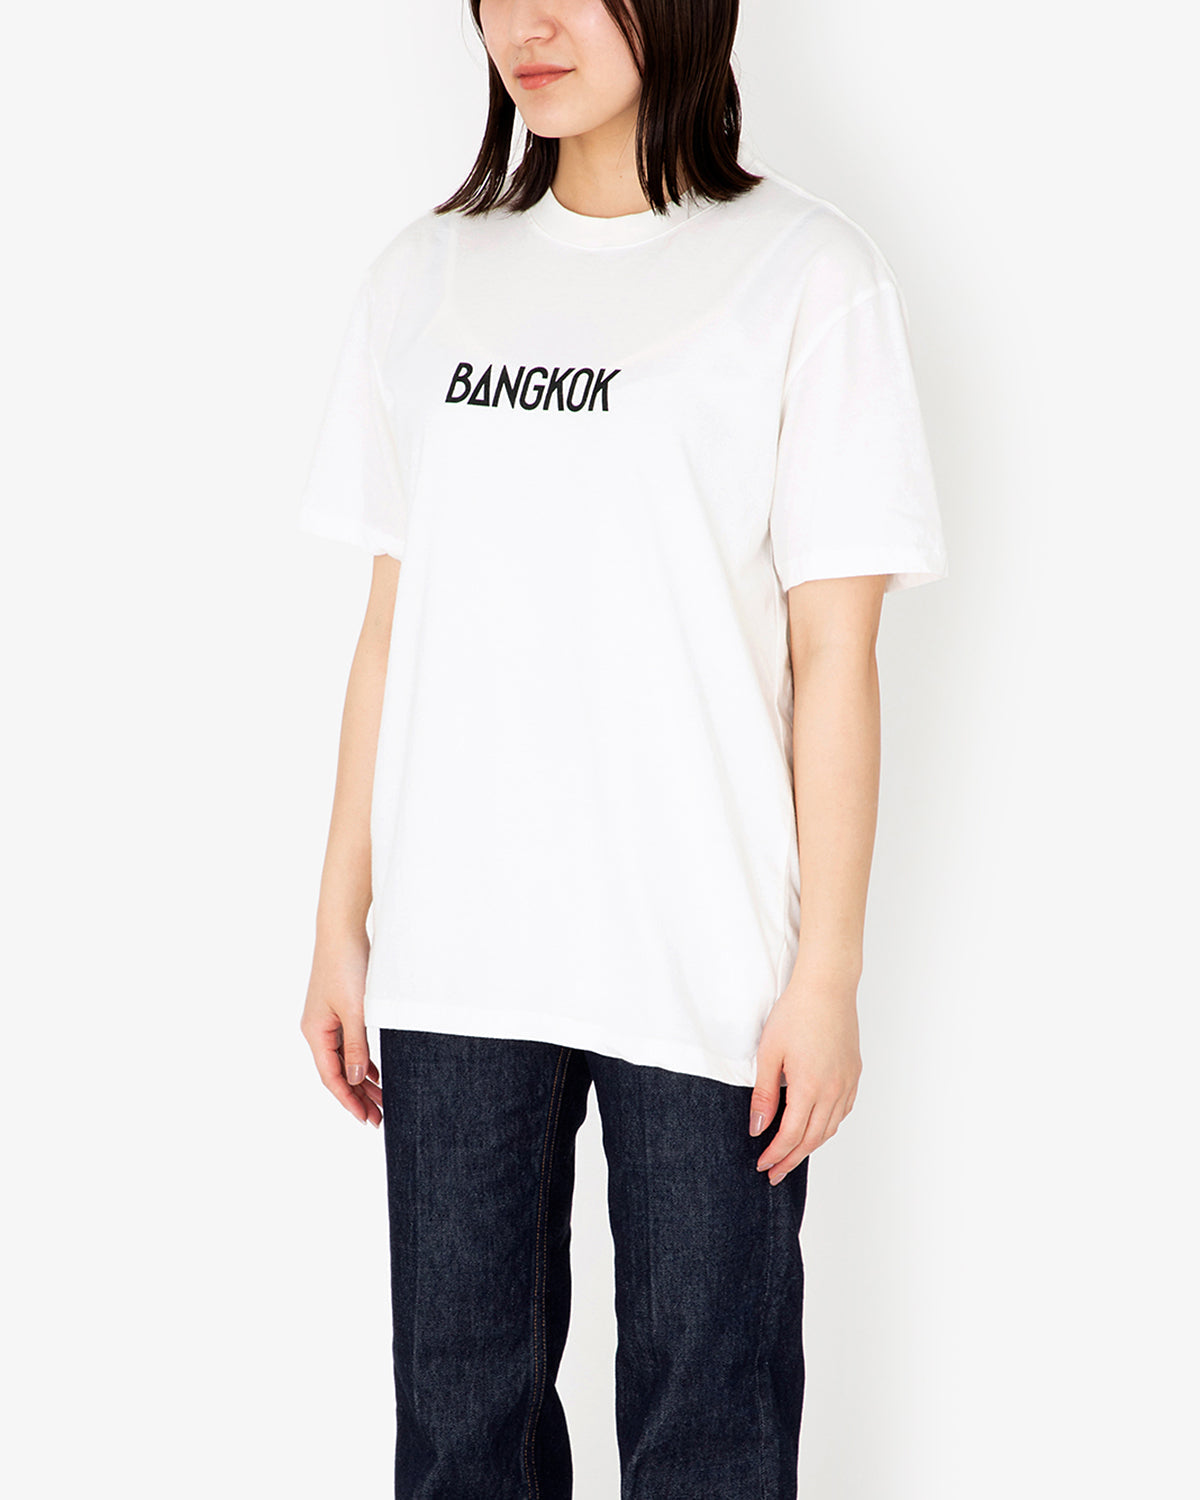 FONT T-shirts（BANGKOK）